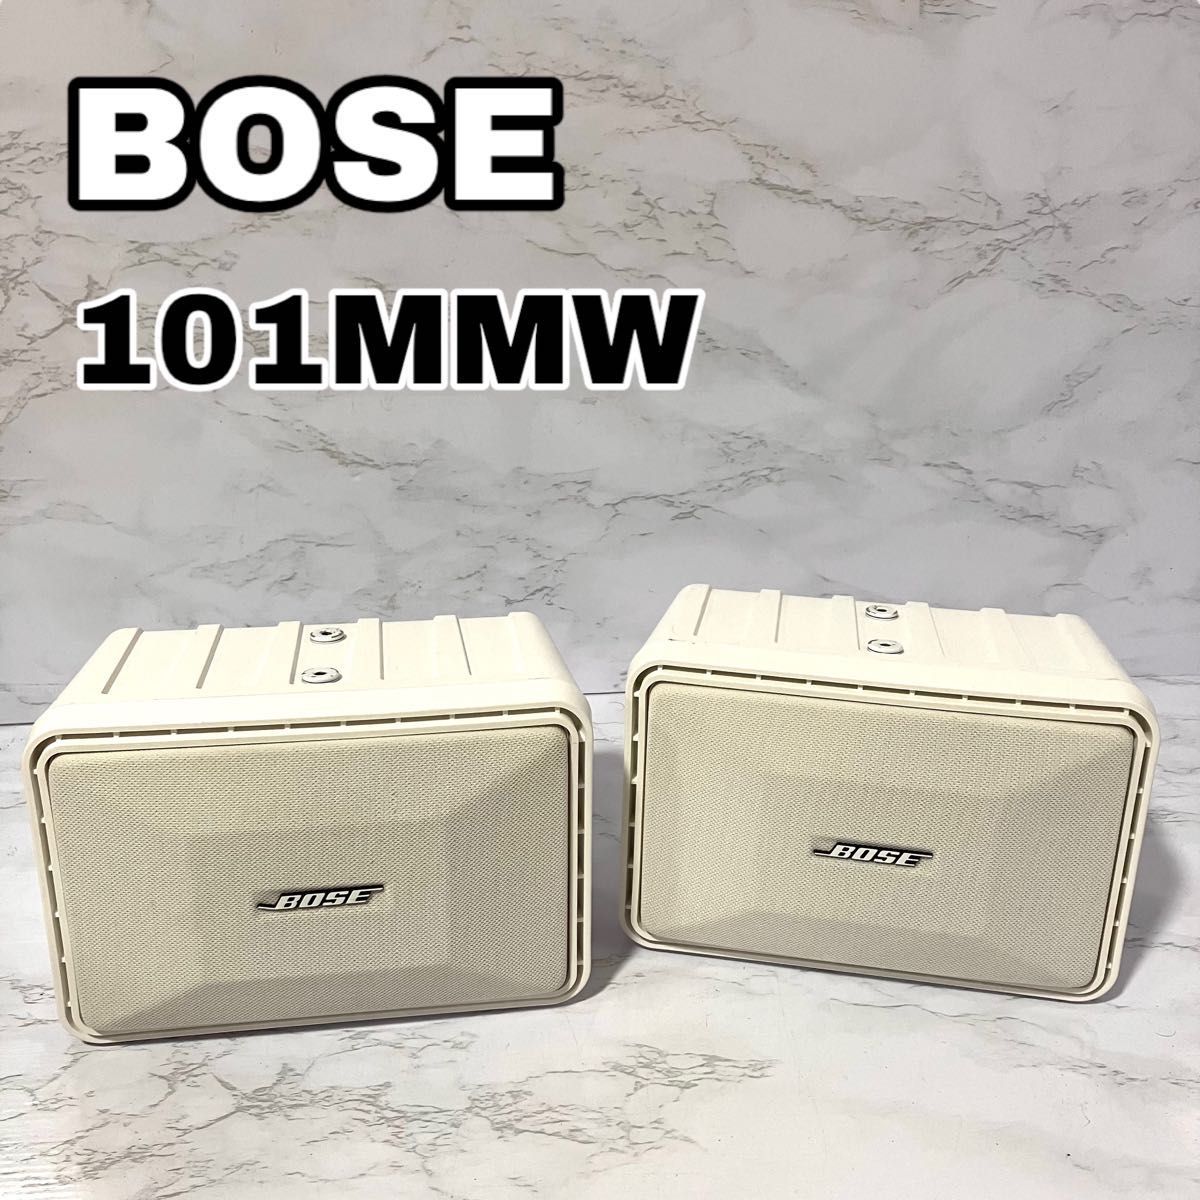 Bose スピーカーシステム 101MMW ボーズ スピーカー ボウズ 連番 白 ホワイト WH